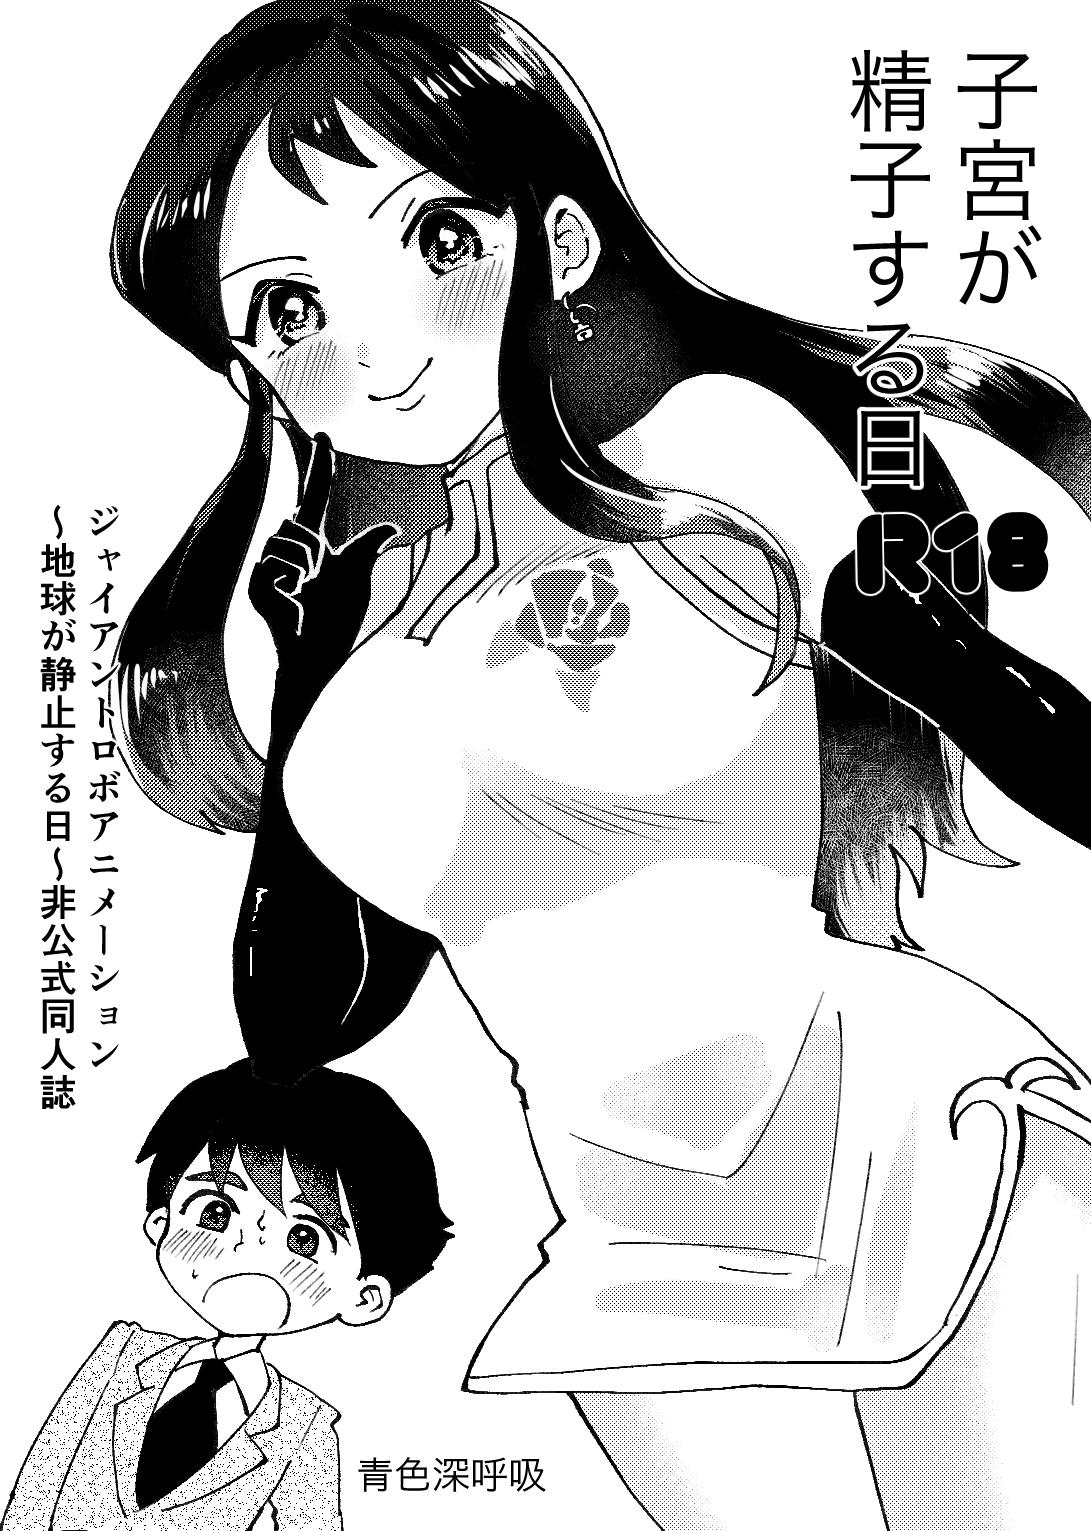 Sixtynine Shikyuu ga Seishi suru Hi - Giant robo Carro - Page 1